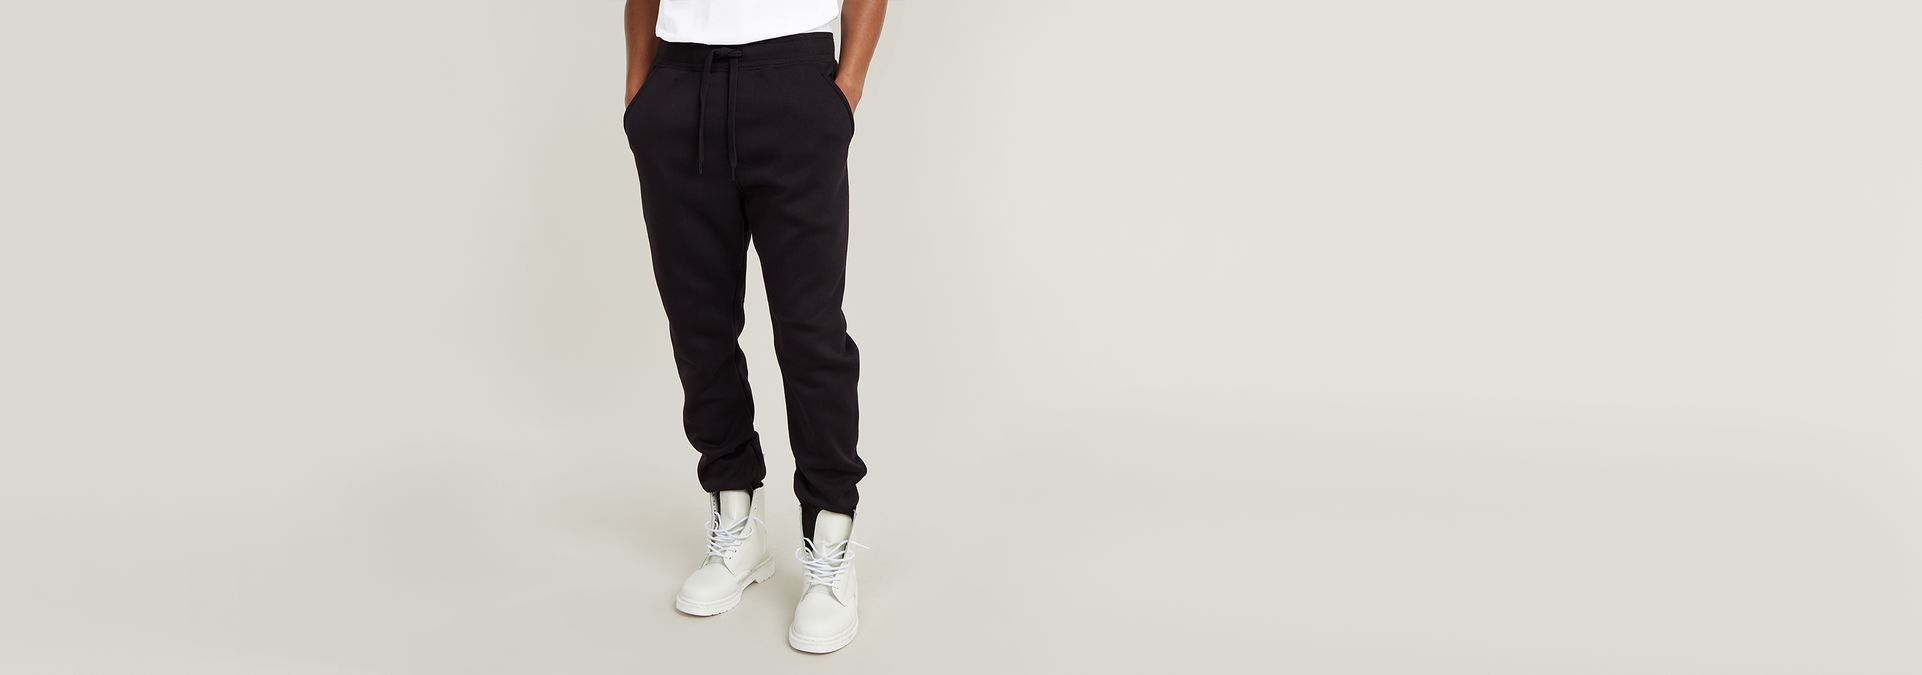 G-Star RAW Men's Unisex Core Oversized Sweatpants Pants, Black (Dk Black  D22007-c235-6484), XS : Amazon.com.au: Clothing, Shoes & Accessories